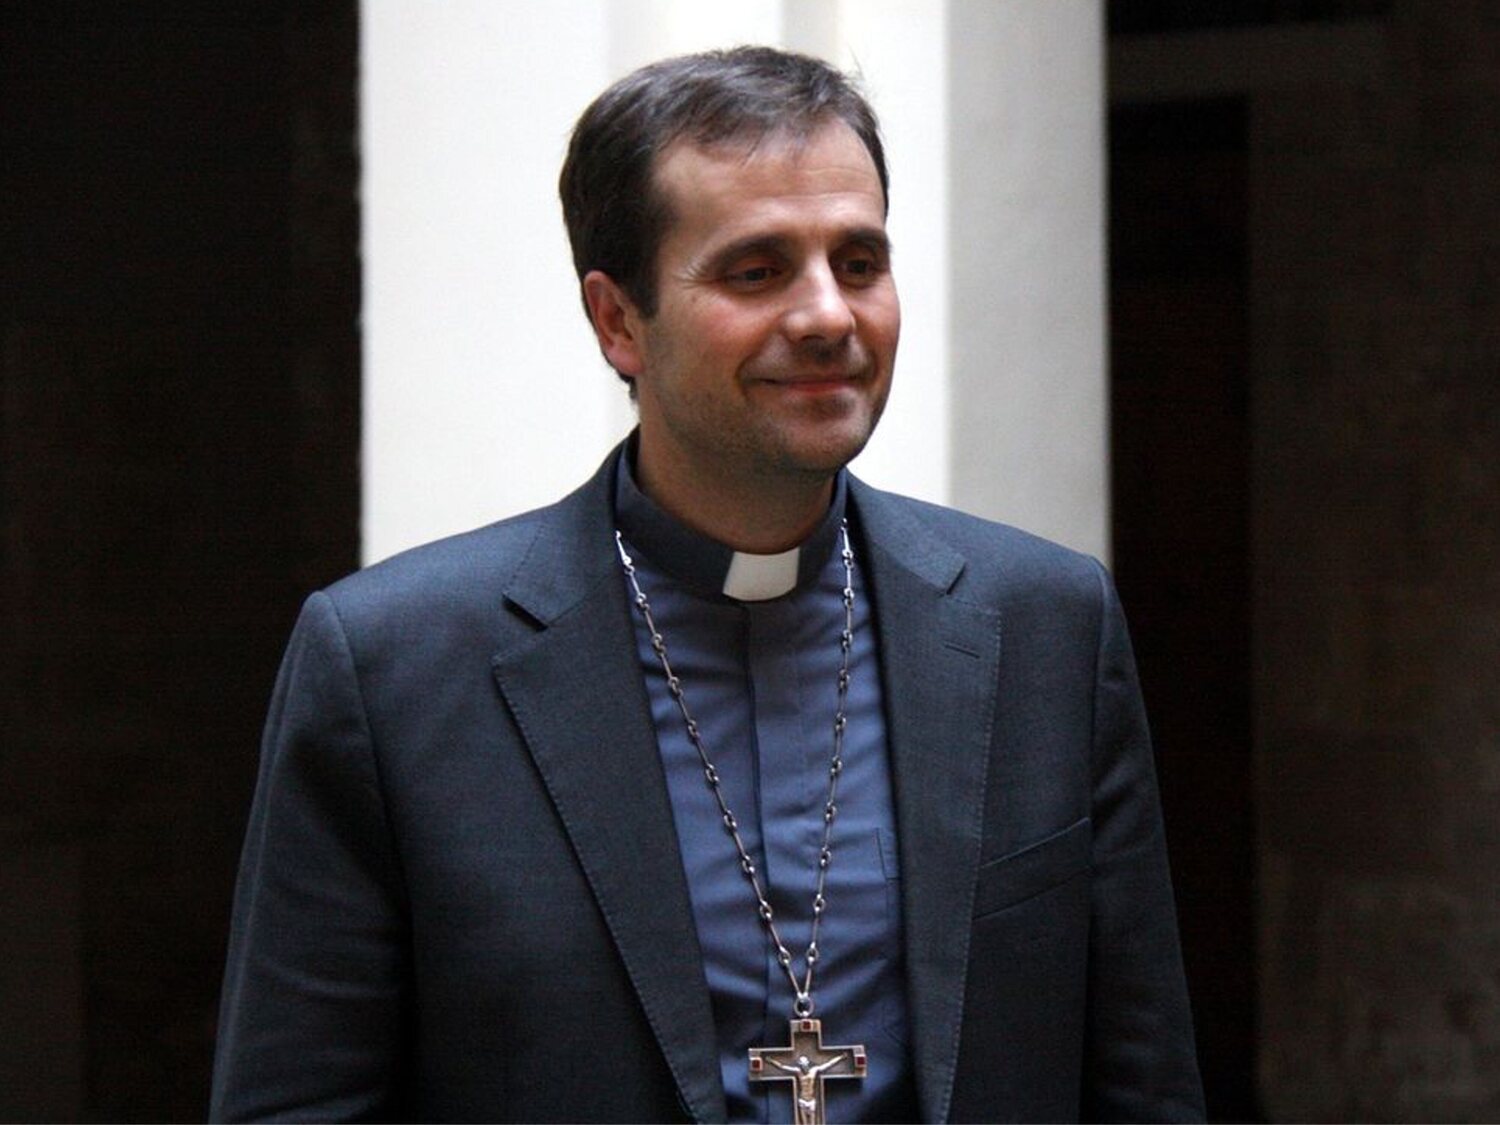 El obispo de Solsana, Xavier Novell, solicita casarse por lo civil con su novia